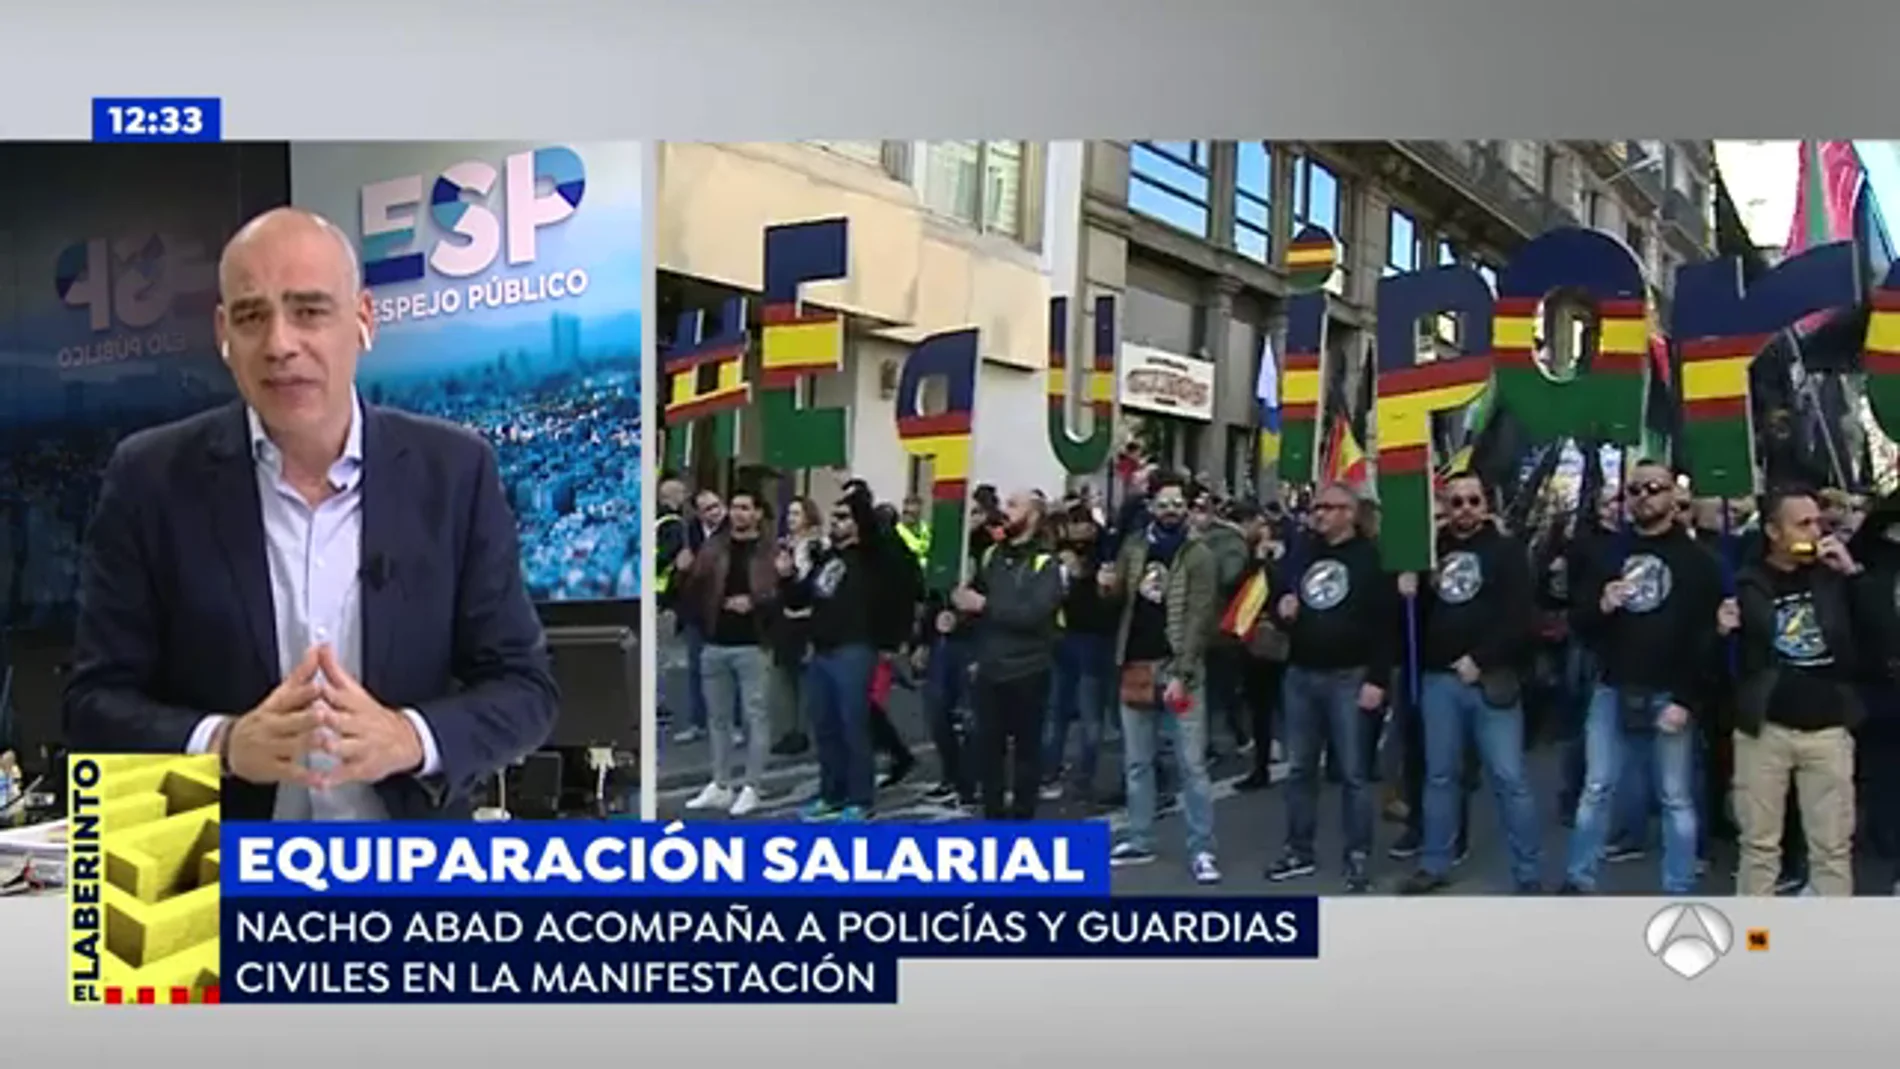 'Espejo Público' vive el ambiente reivindicativo en la manifestación por la equiparación salarial en Barcelona